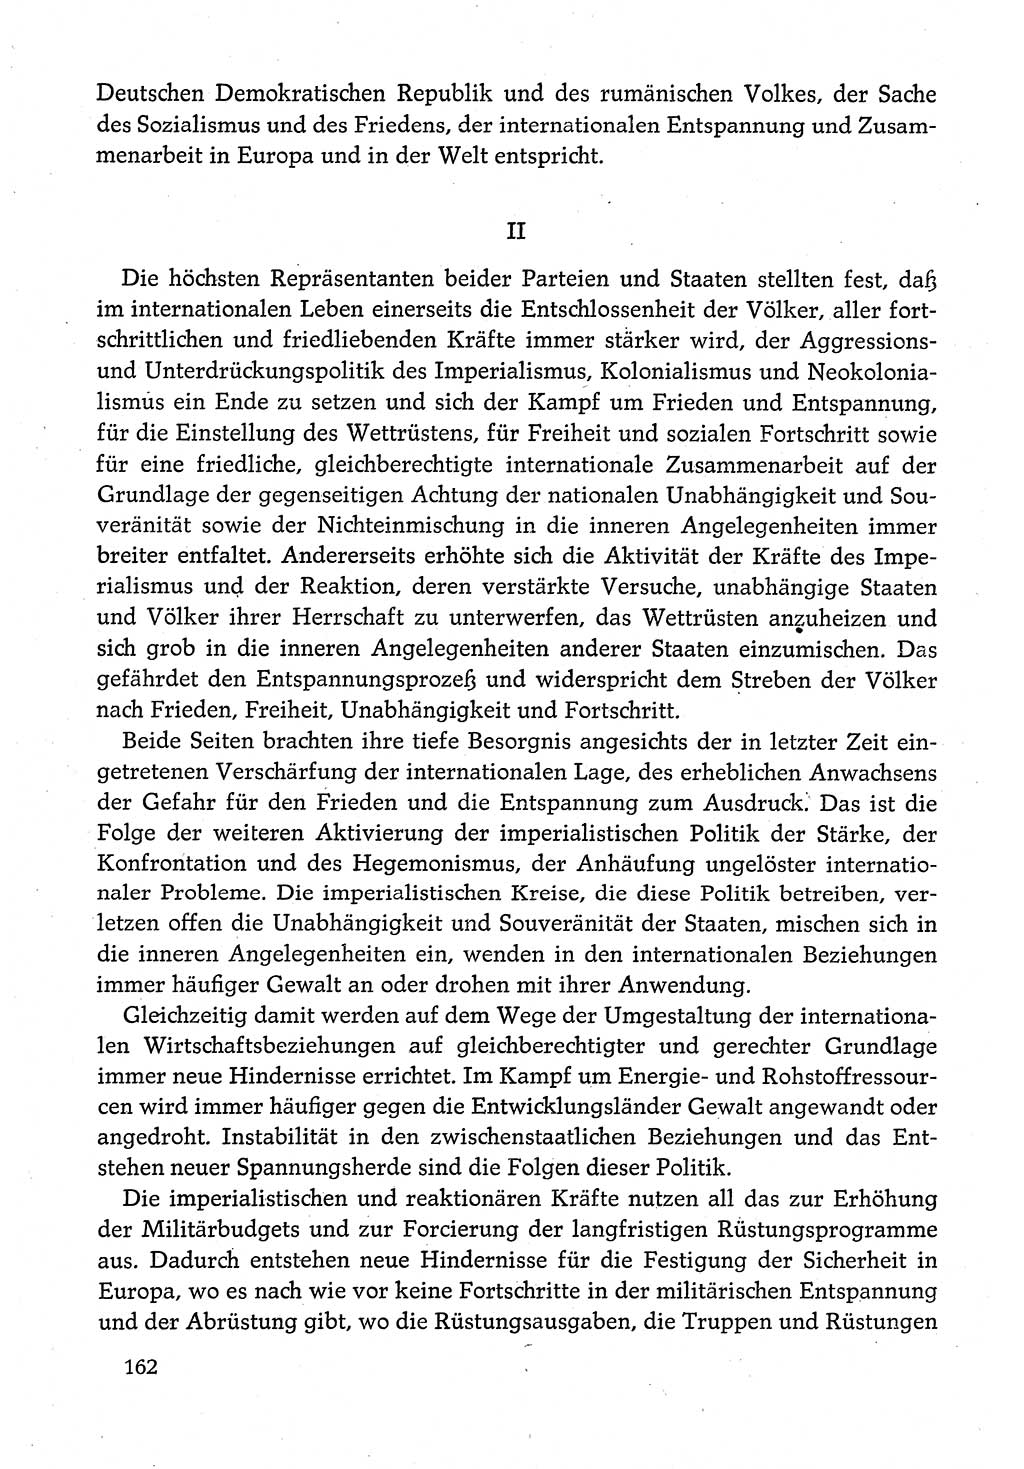 Dokumente der Sozialistischen Einheitspartei Deutschlands (SED) [Deutsche Demokratische Republik (DDR)] 1980-1981, Seite 162 (Dok. SED DDR 1980-1981, S. 162)